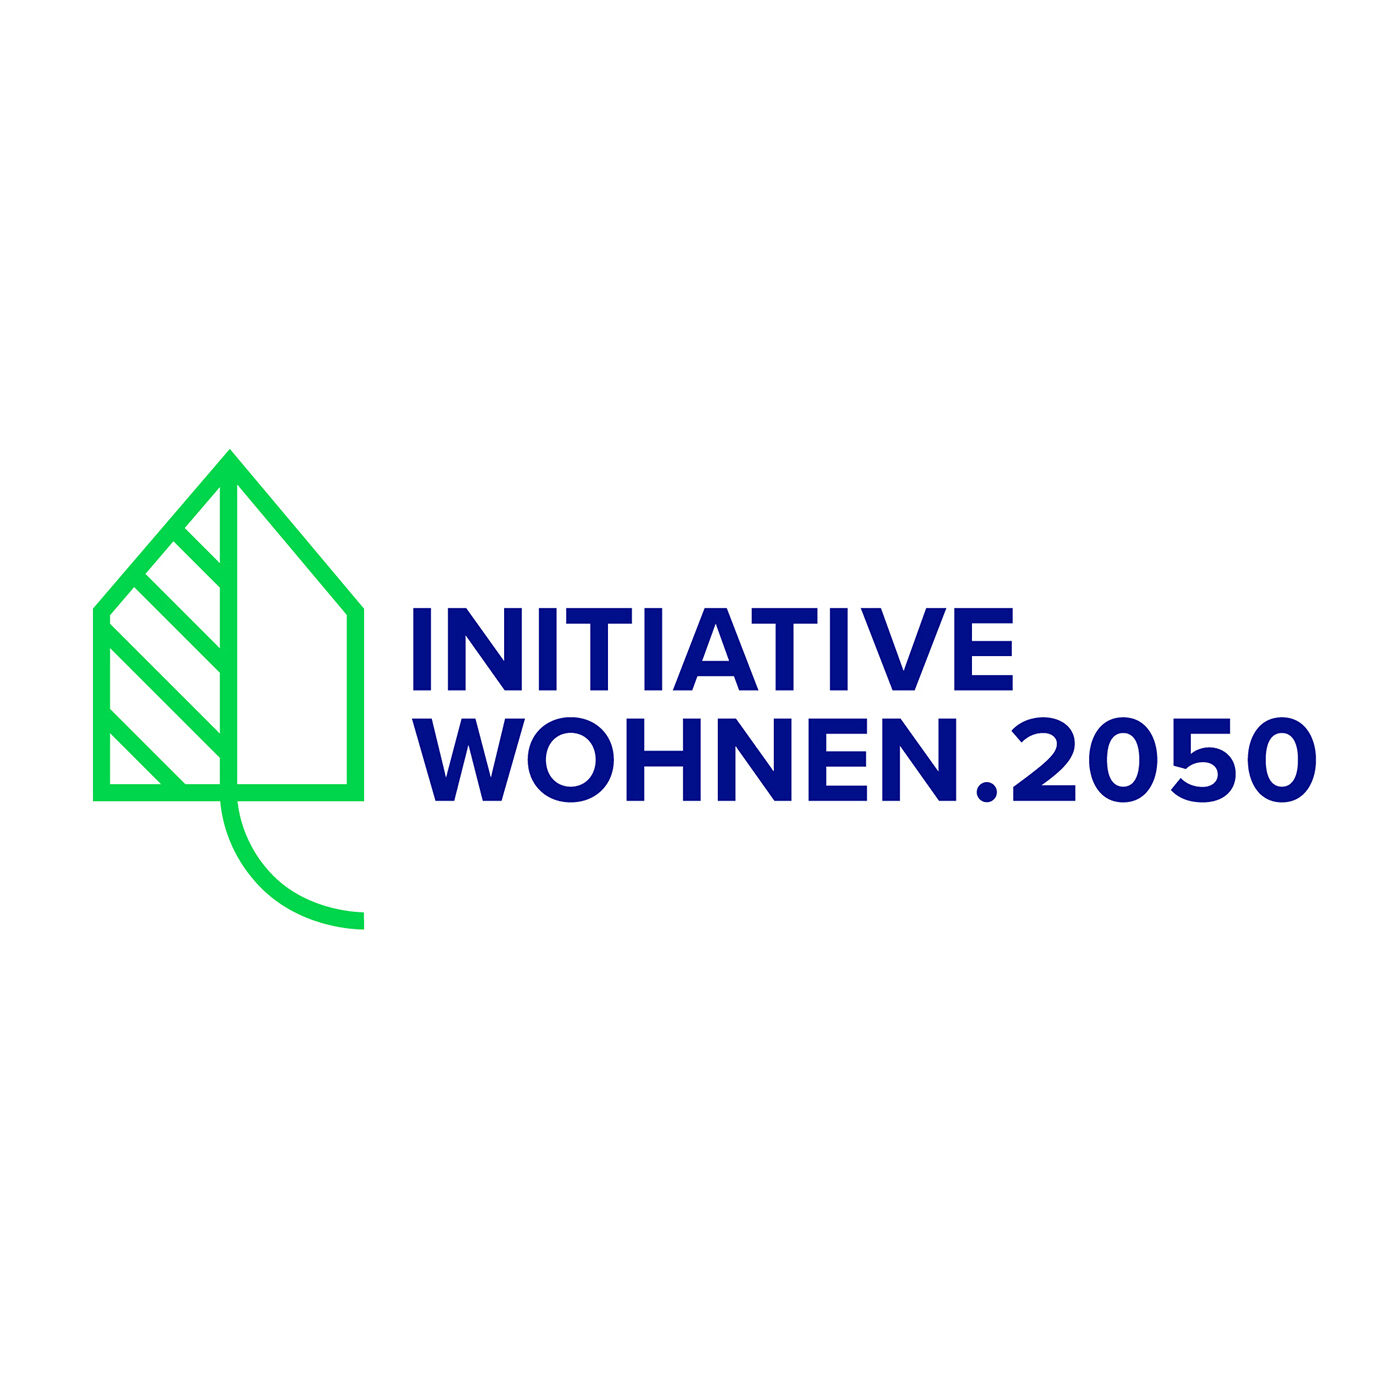 Initiative Wohnen.2050